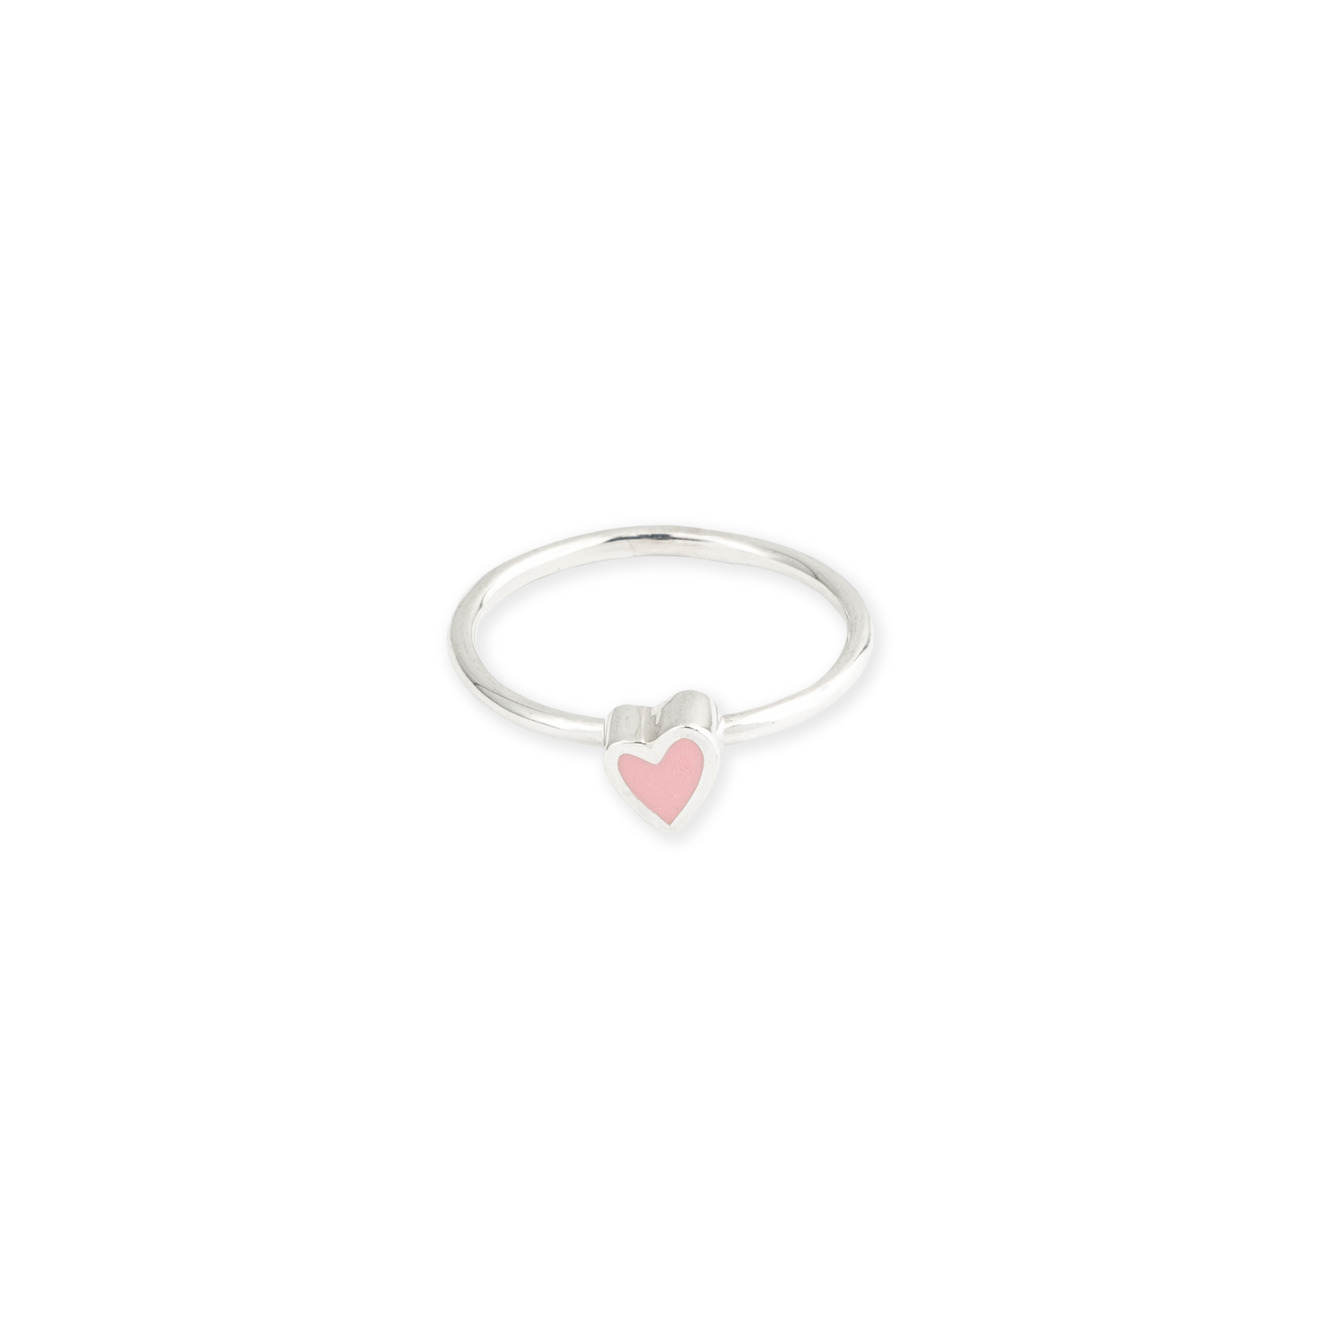 УРА jewelry Кольцо из серебра с розовым сердцем эмаль ура jewelry кольцо из серебра с розовым сердцем эмаль